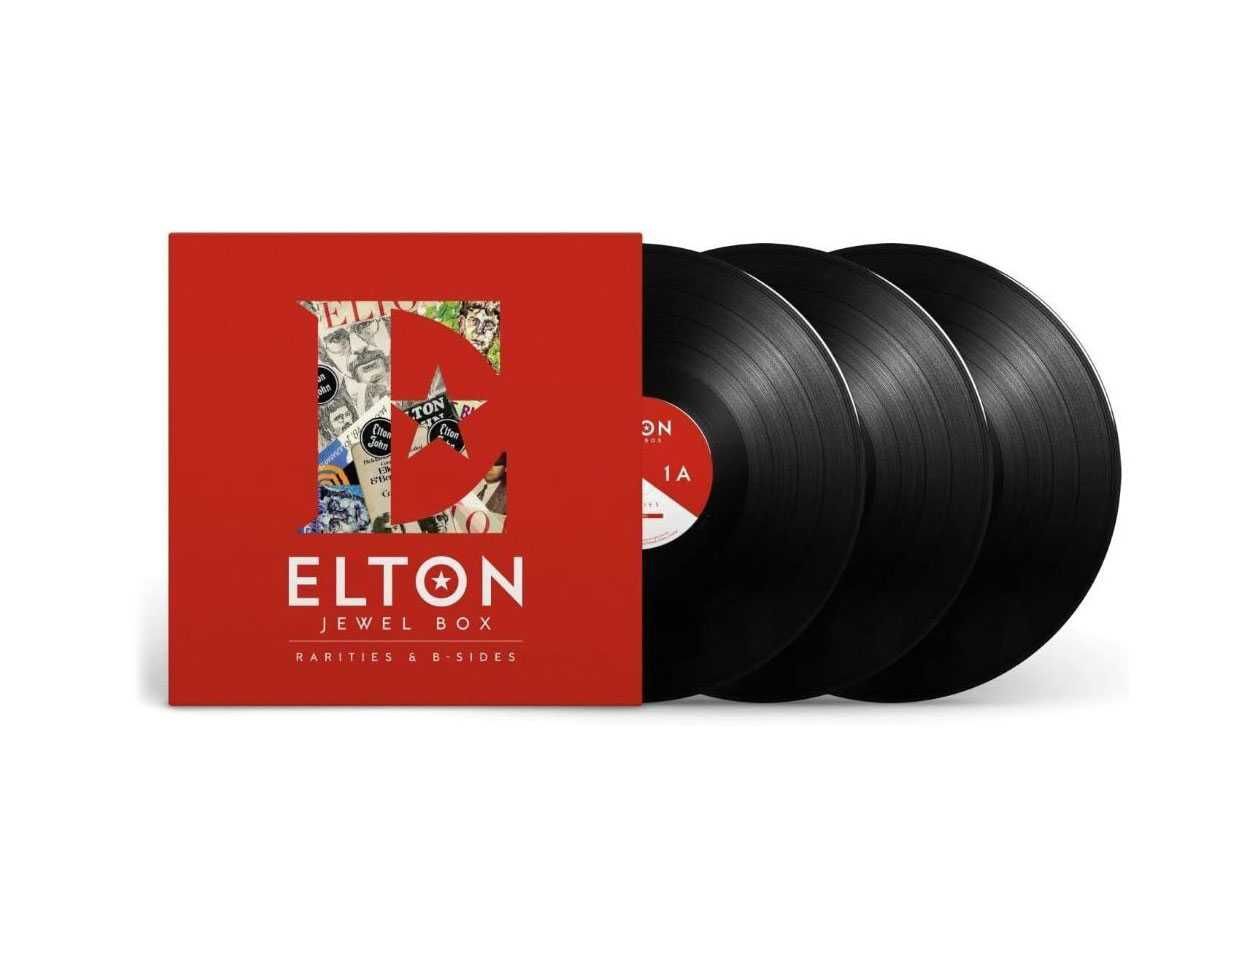 3 LP платівки Elton John - Jewel Box Rarities & B-Sides. 2020. 180g